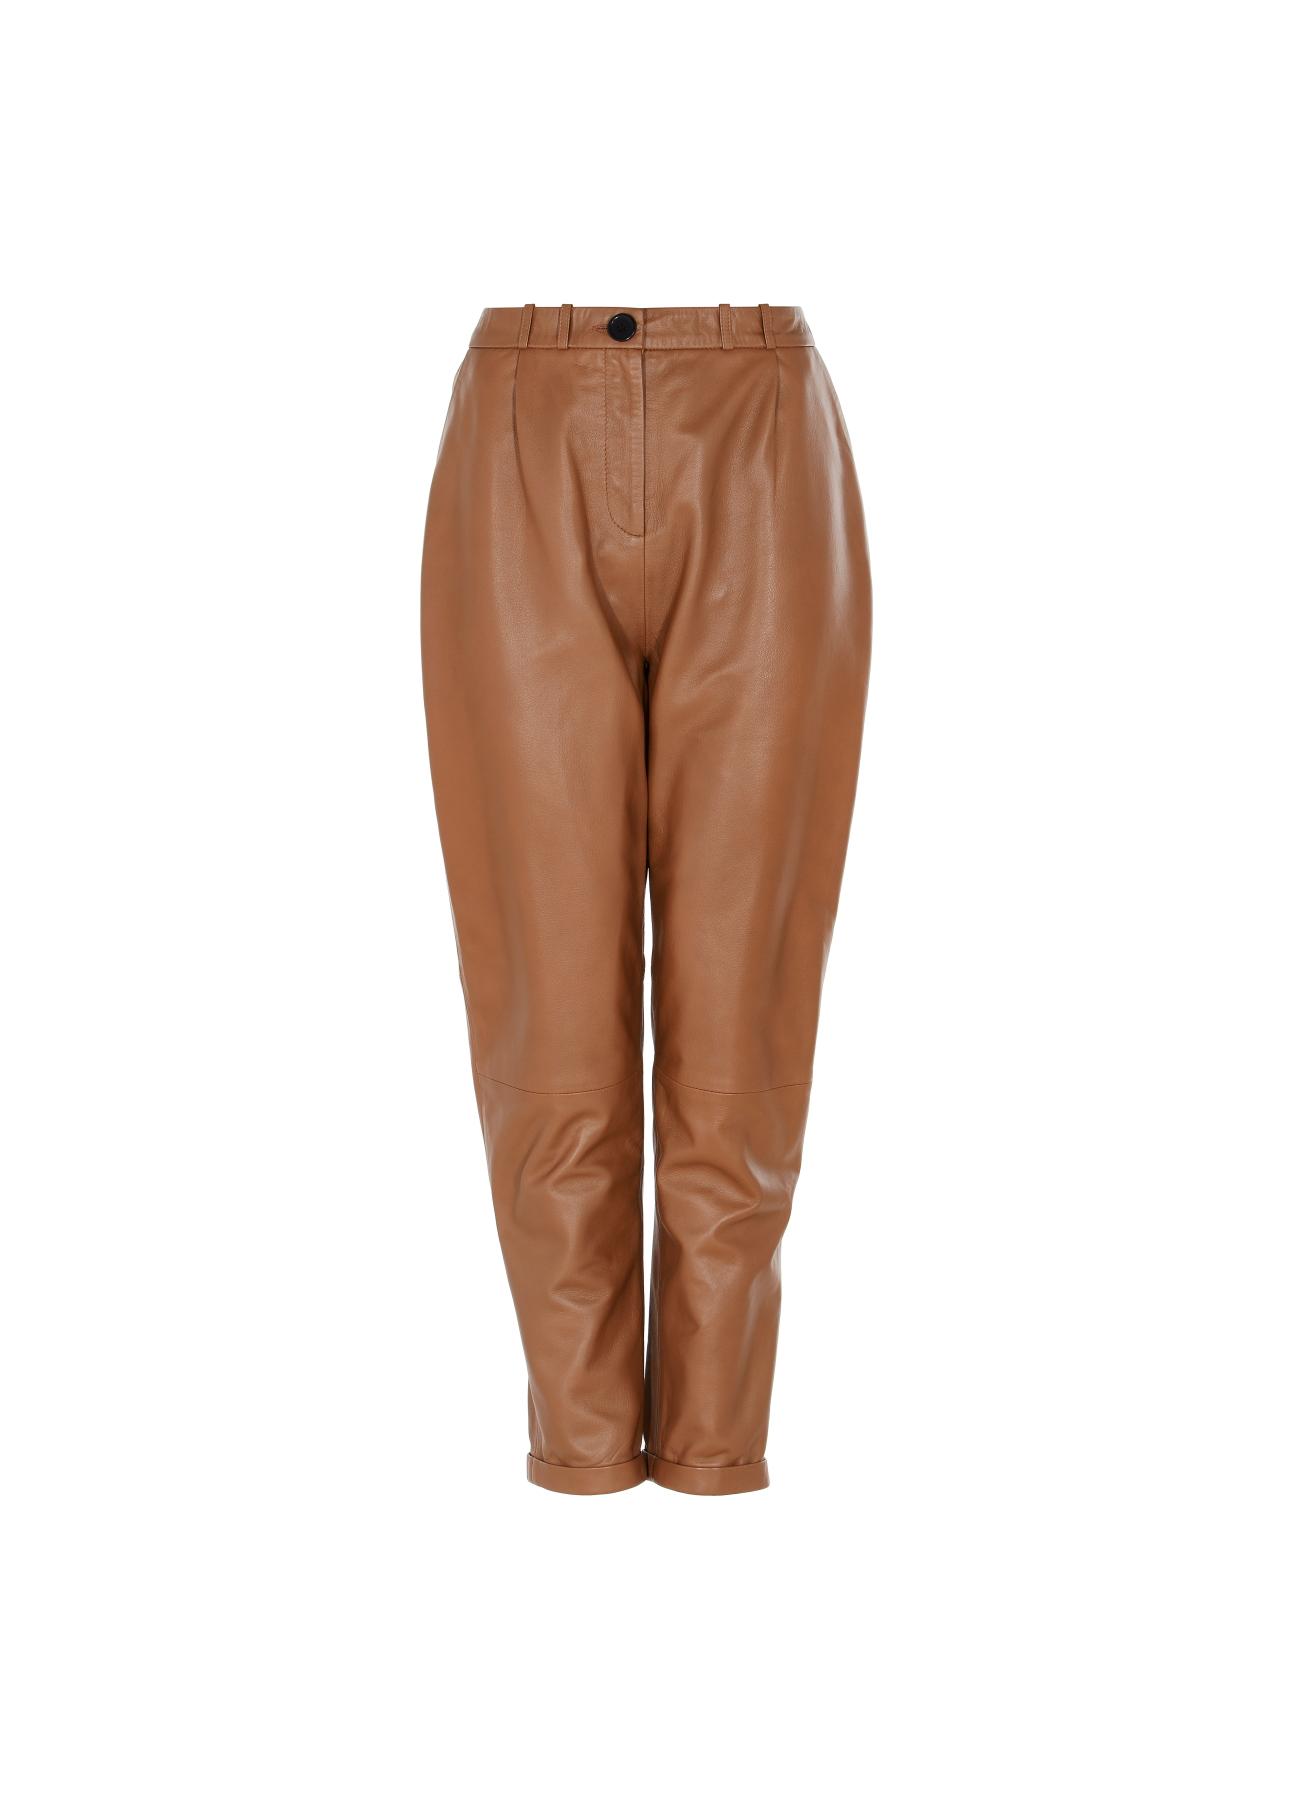 Spodnie skórzane karmelowe damskie SPODS-0022-1103(W22)-03